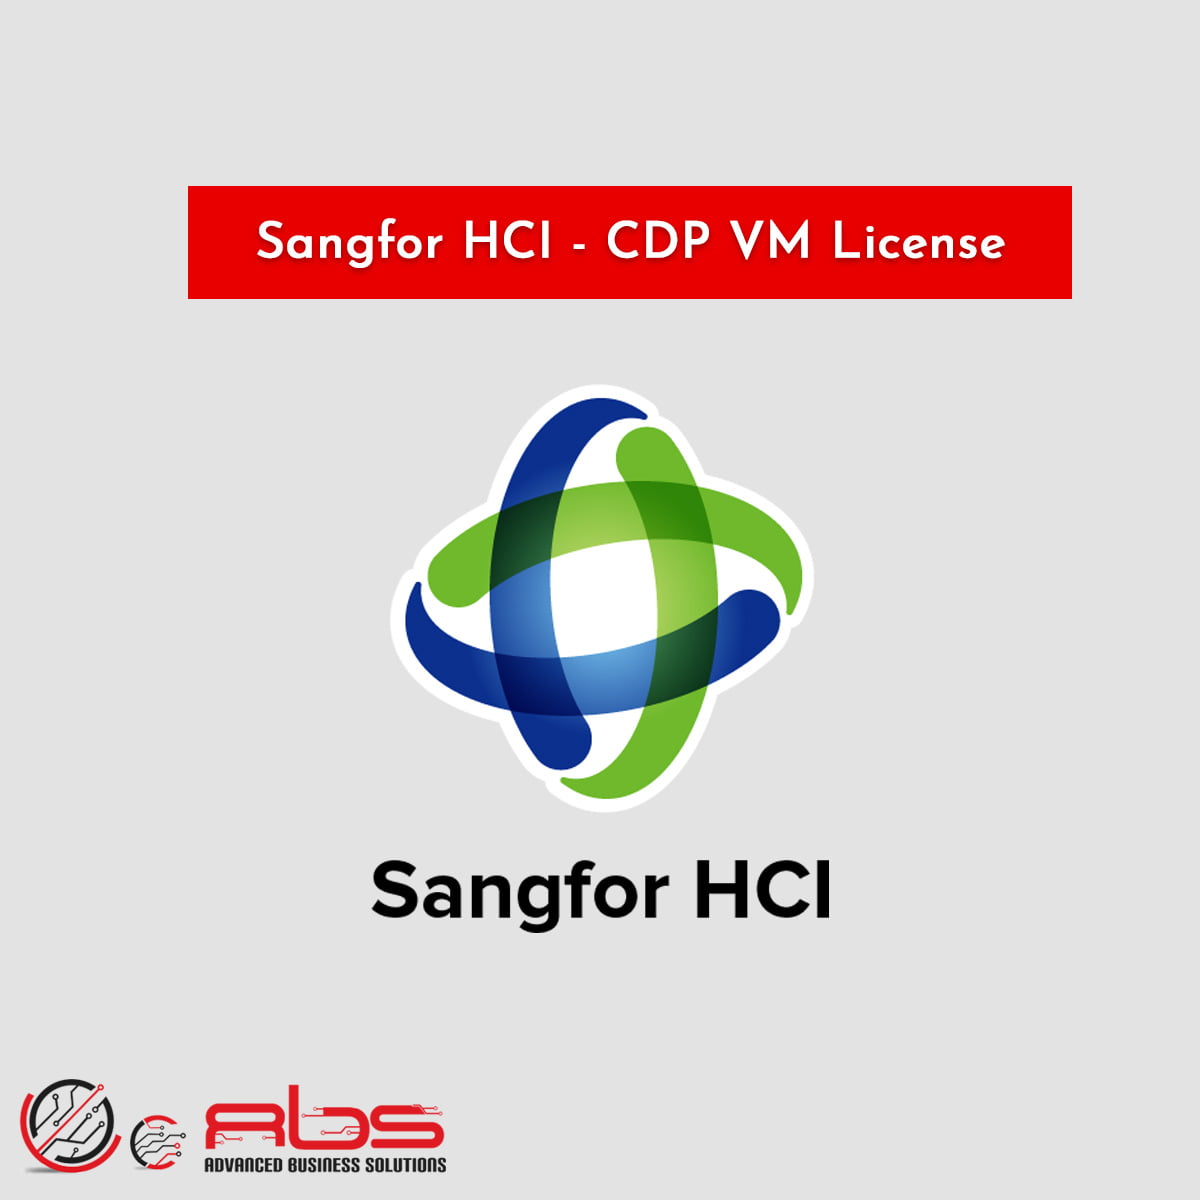 Sangfor HCI - CDP VM License